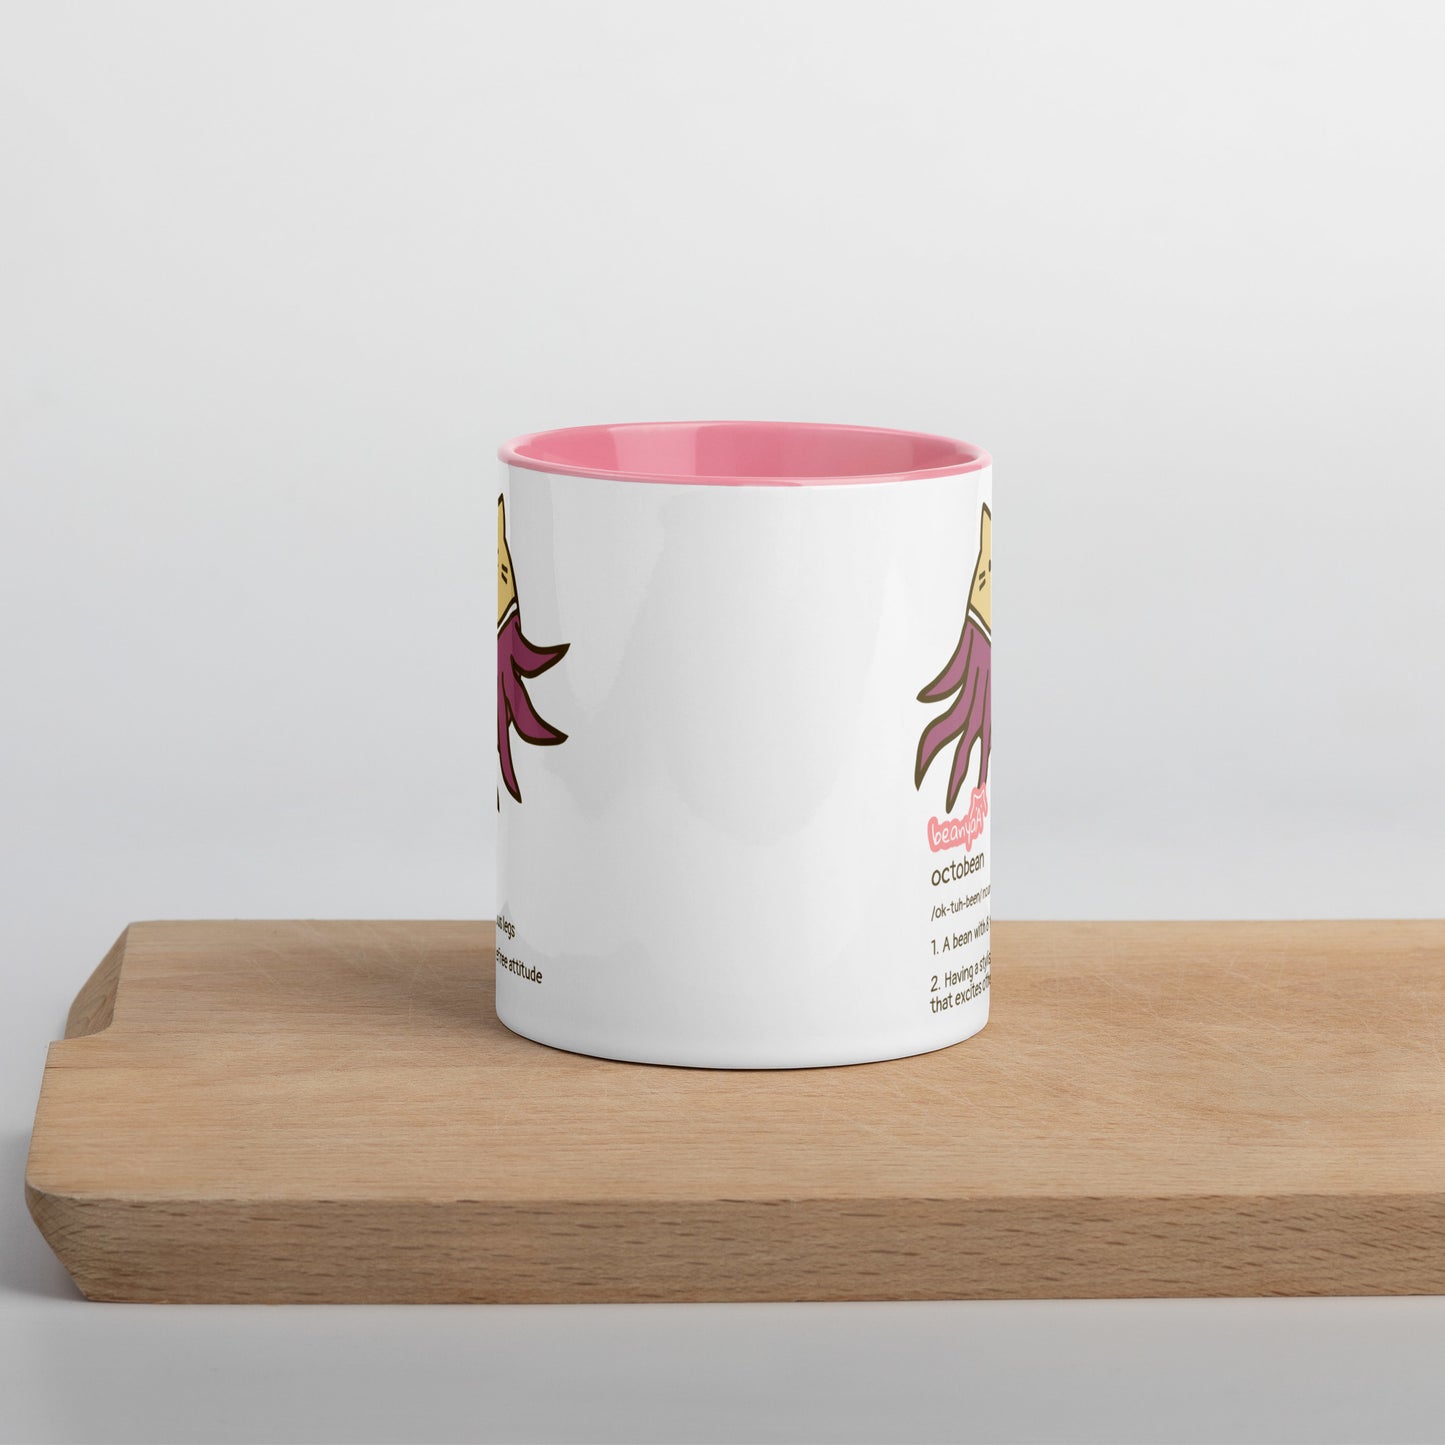 Octobean mug